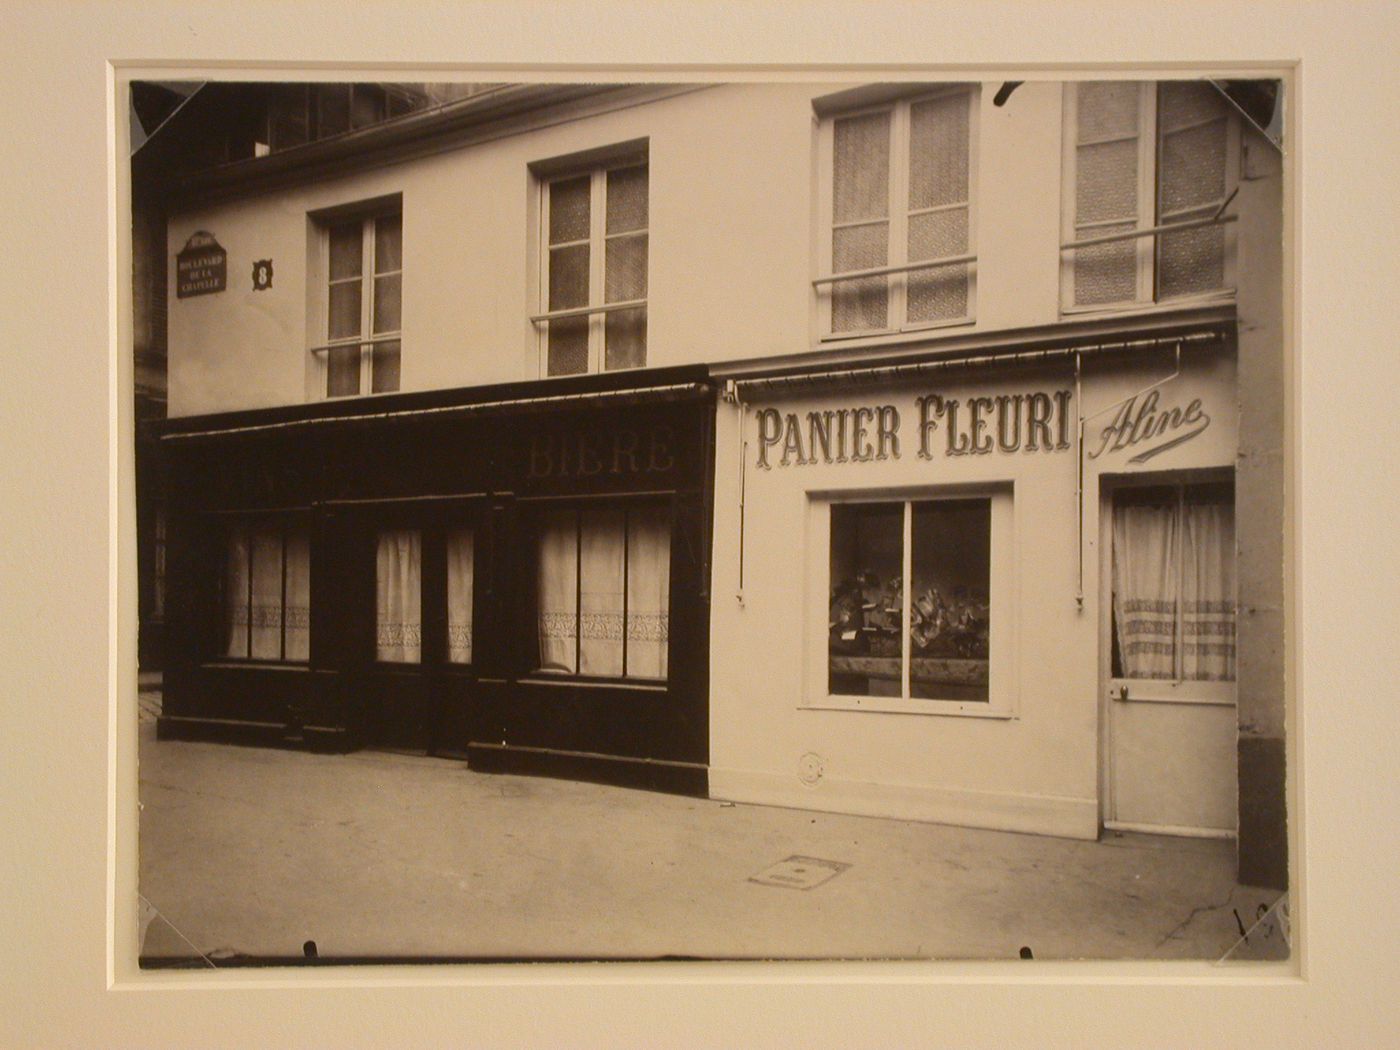 Boulevard de la Chapelle, view of shopsincluding Panier Fleuri, Paris, France